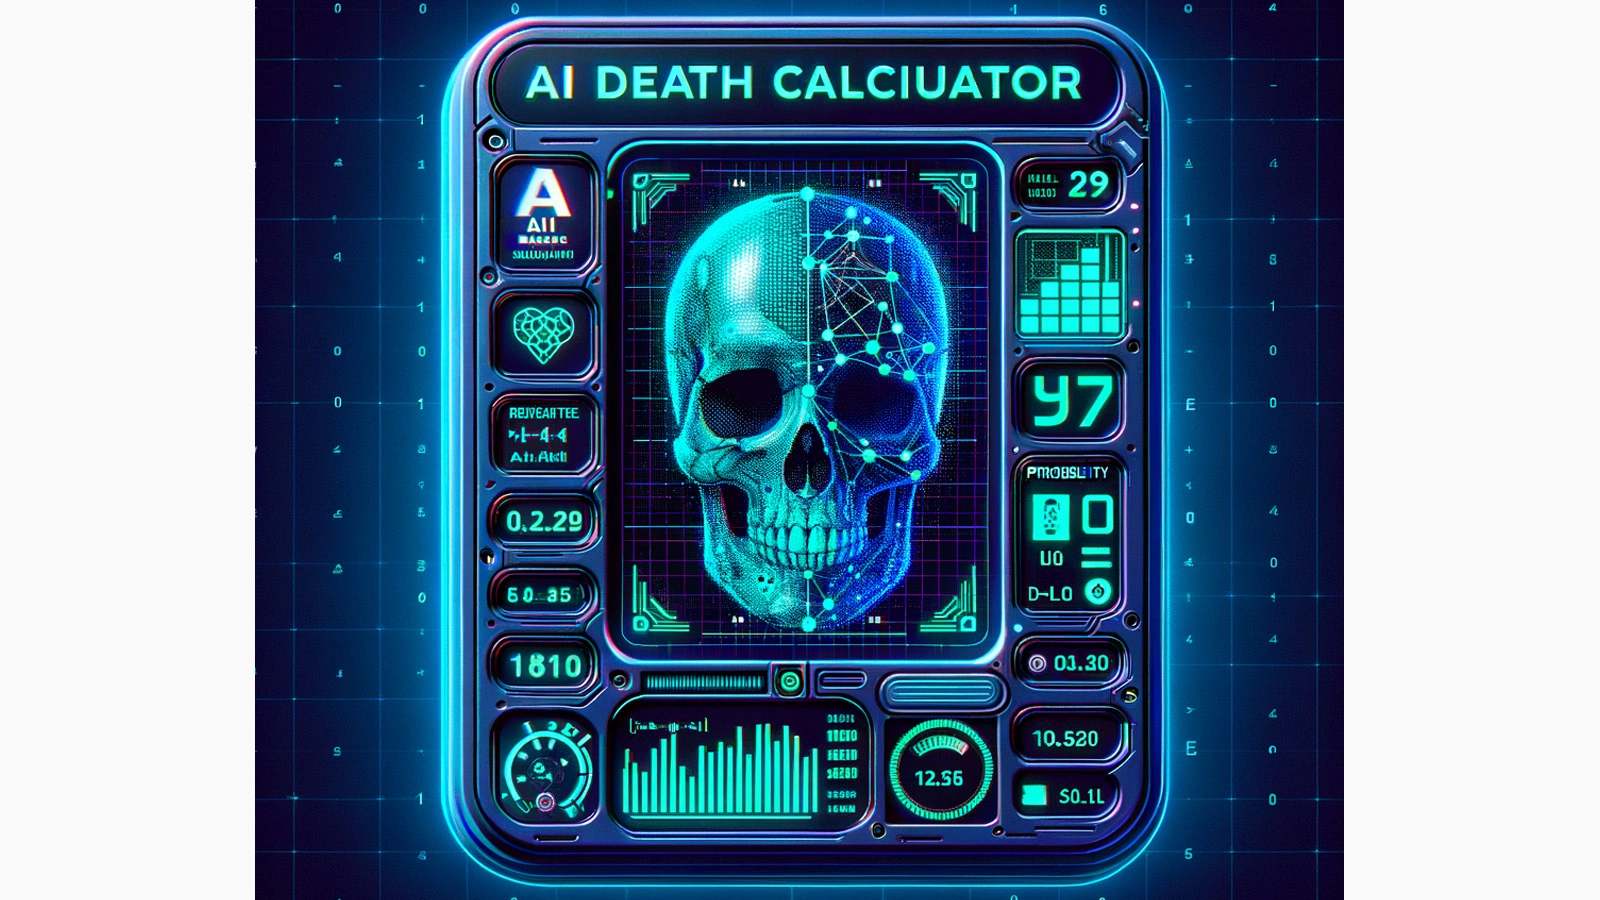 deathcalculator.ai